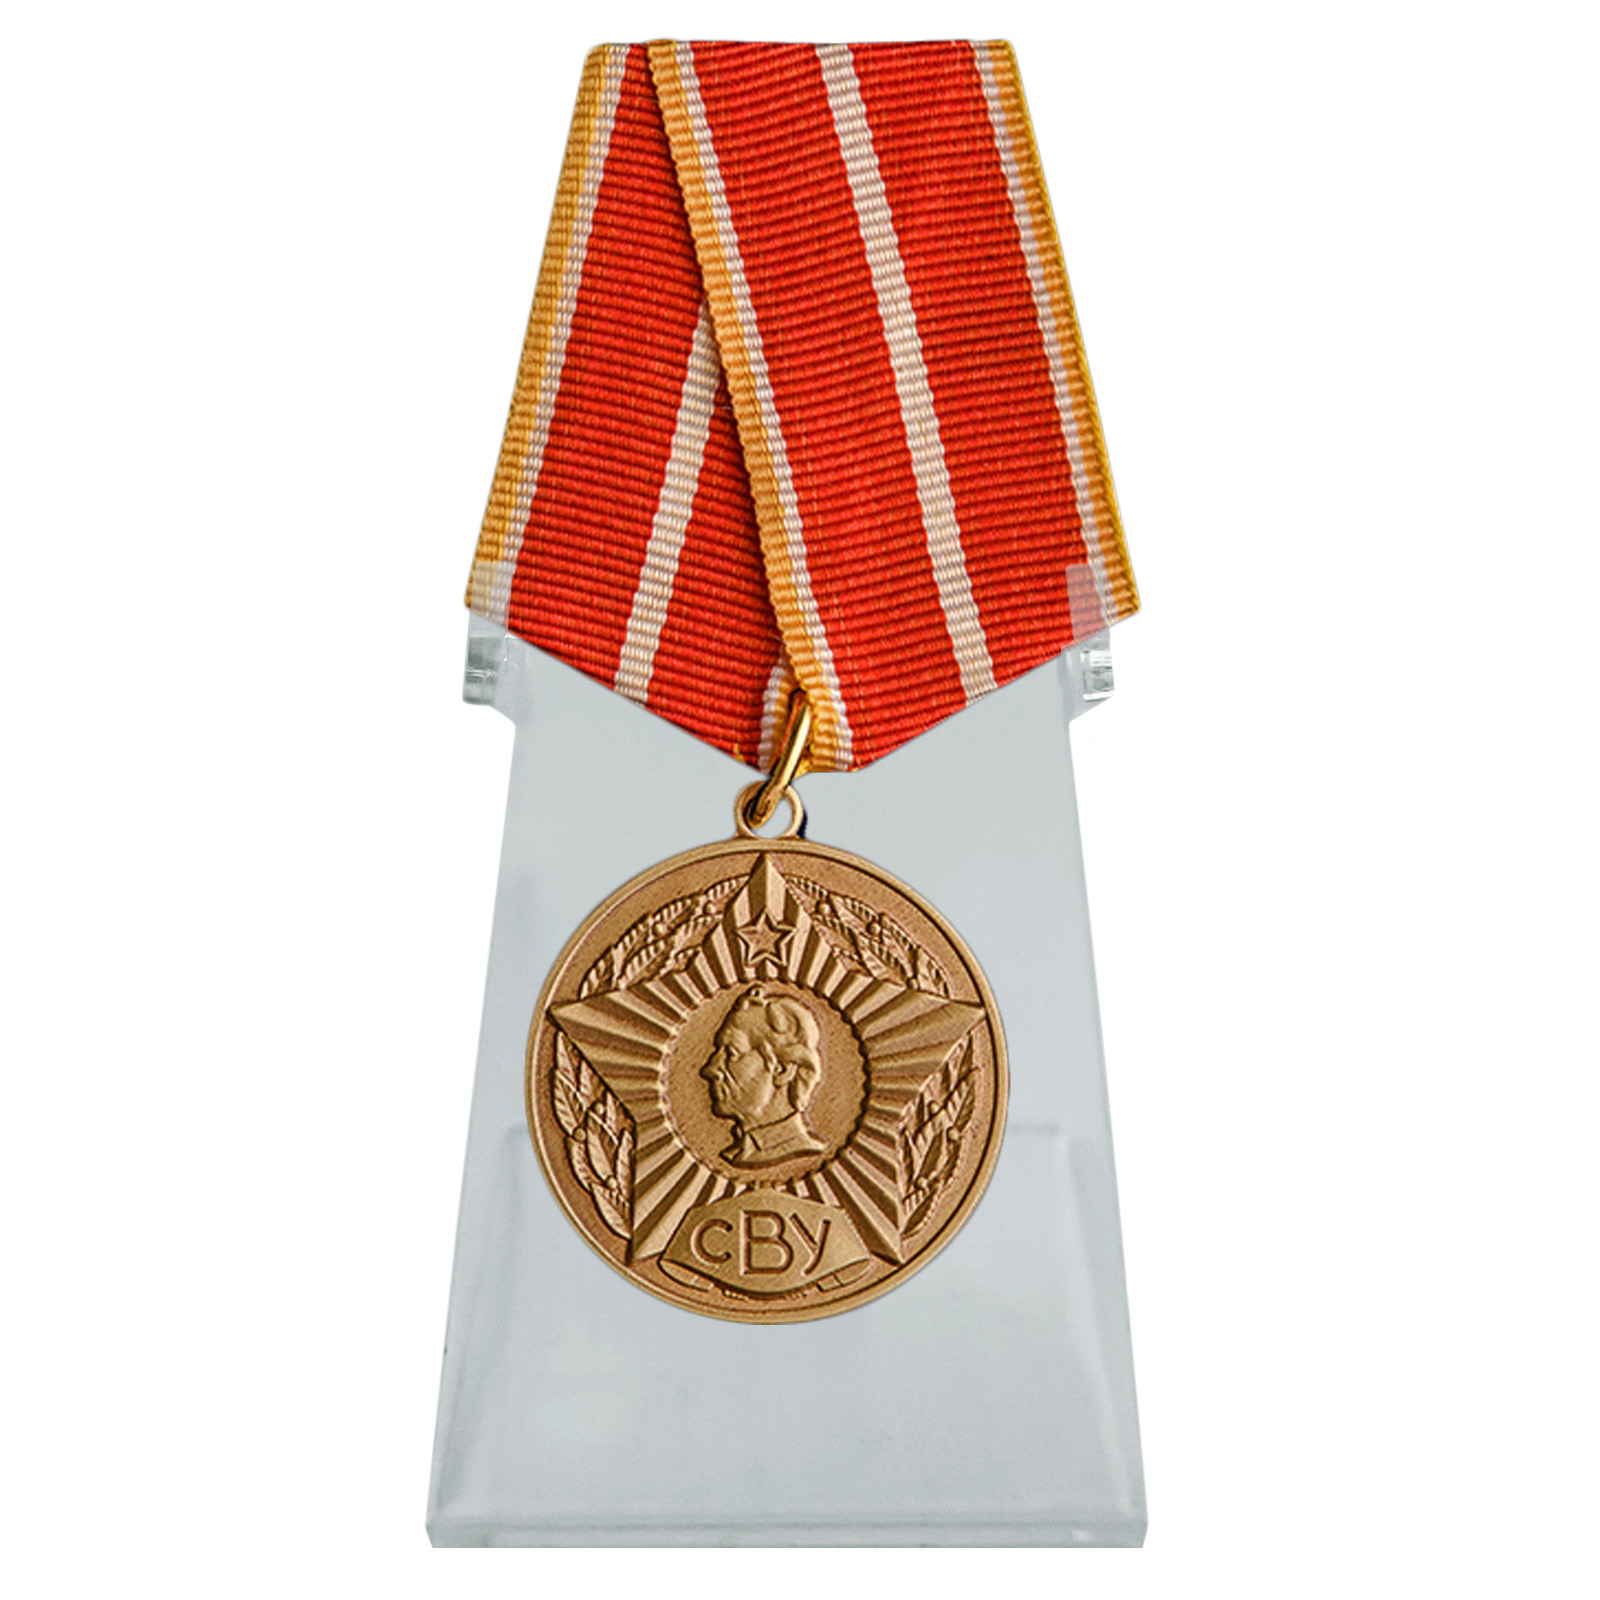 Медаль "Выпускнику Суворовского военного училища" на подставке